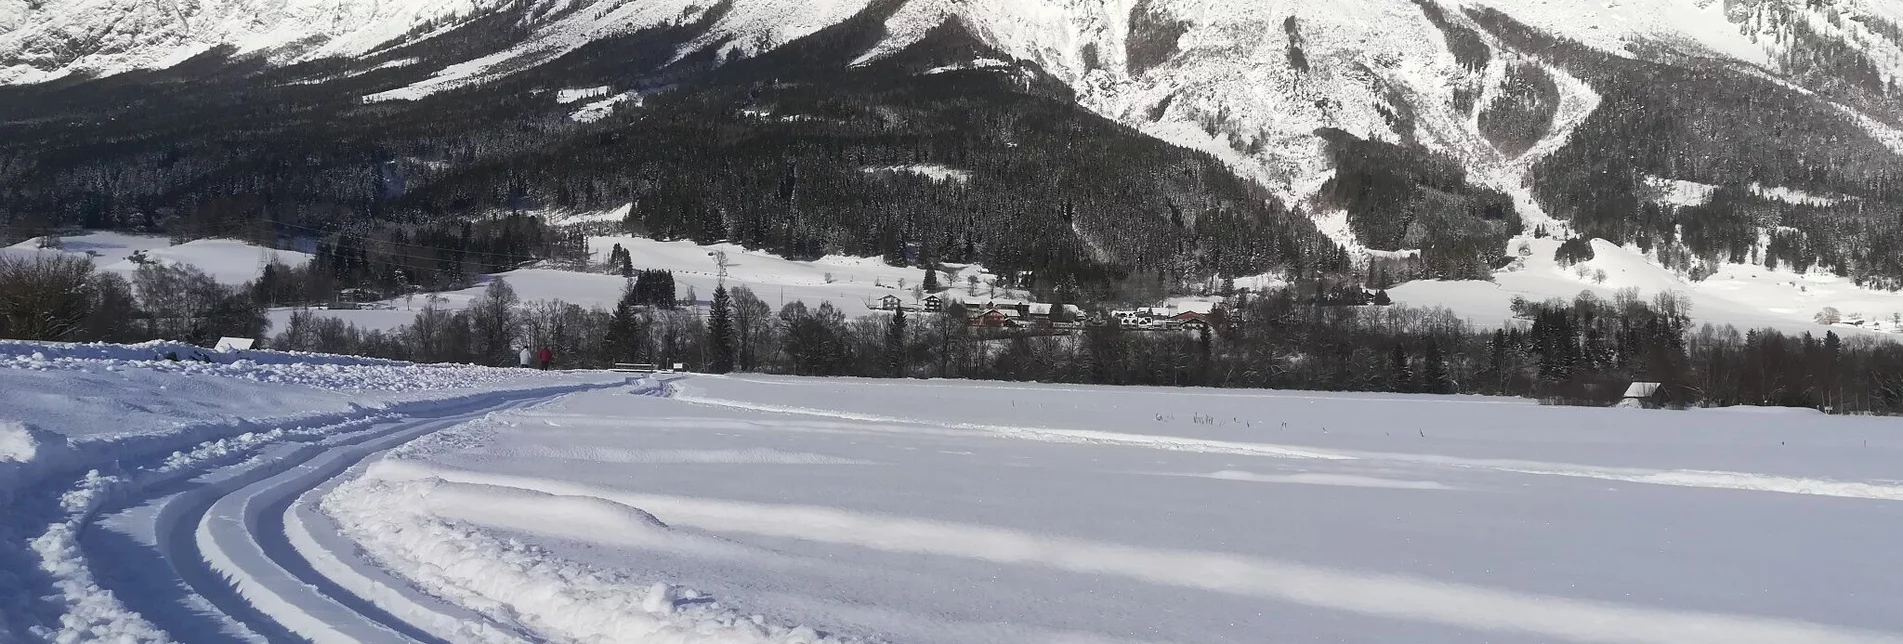 Cross-Country Skiing XC trail Öblarn-Niederöblarn - Touren-Impression #1 | © Erlebnisregion Schladming-Dachstein